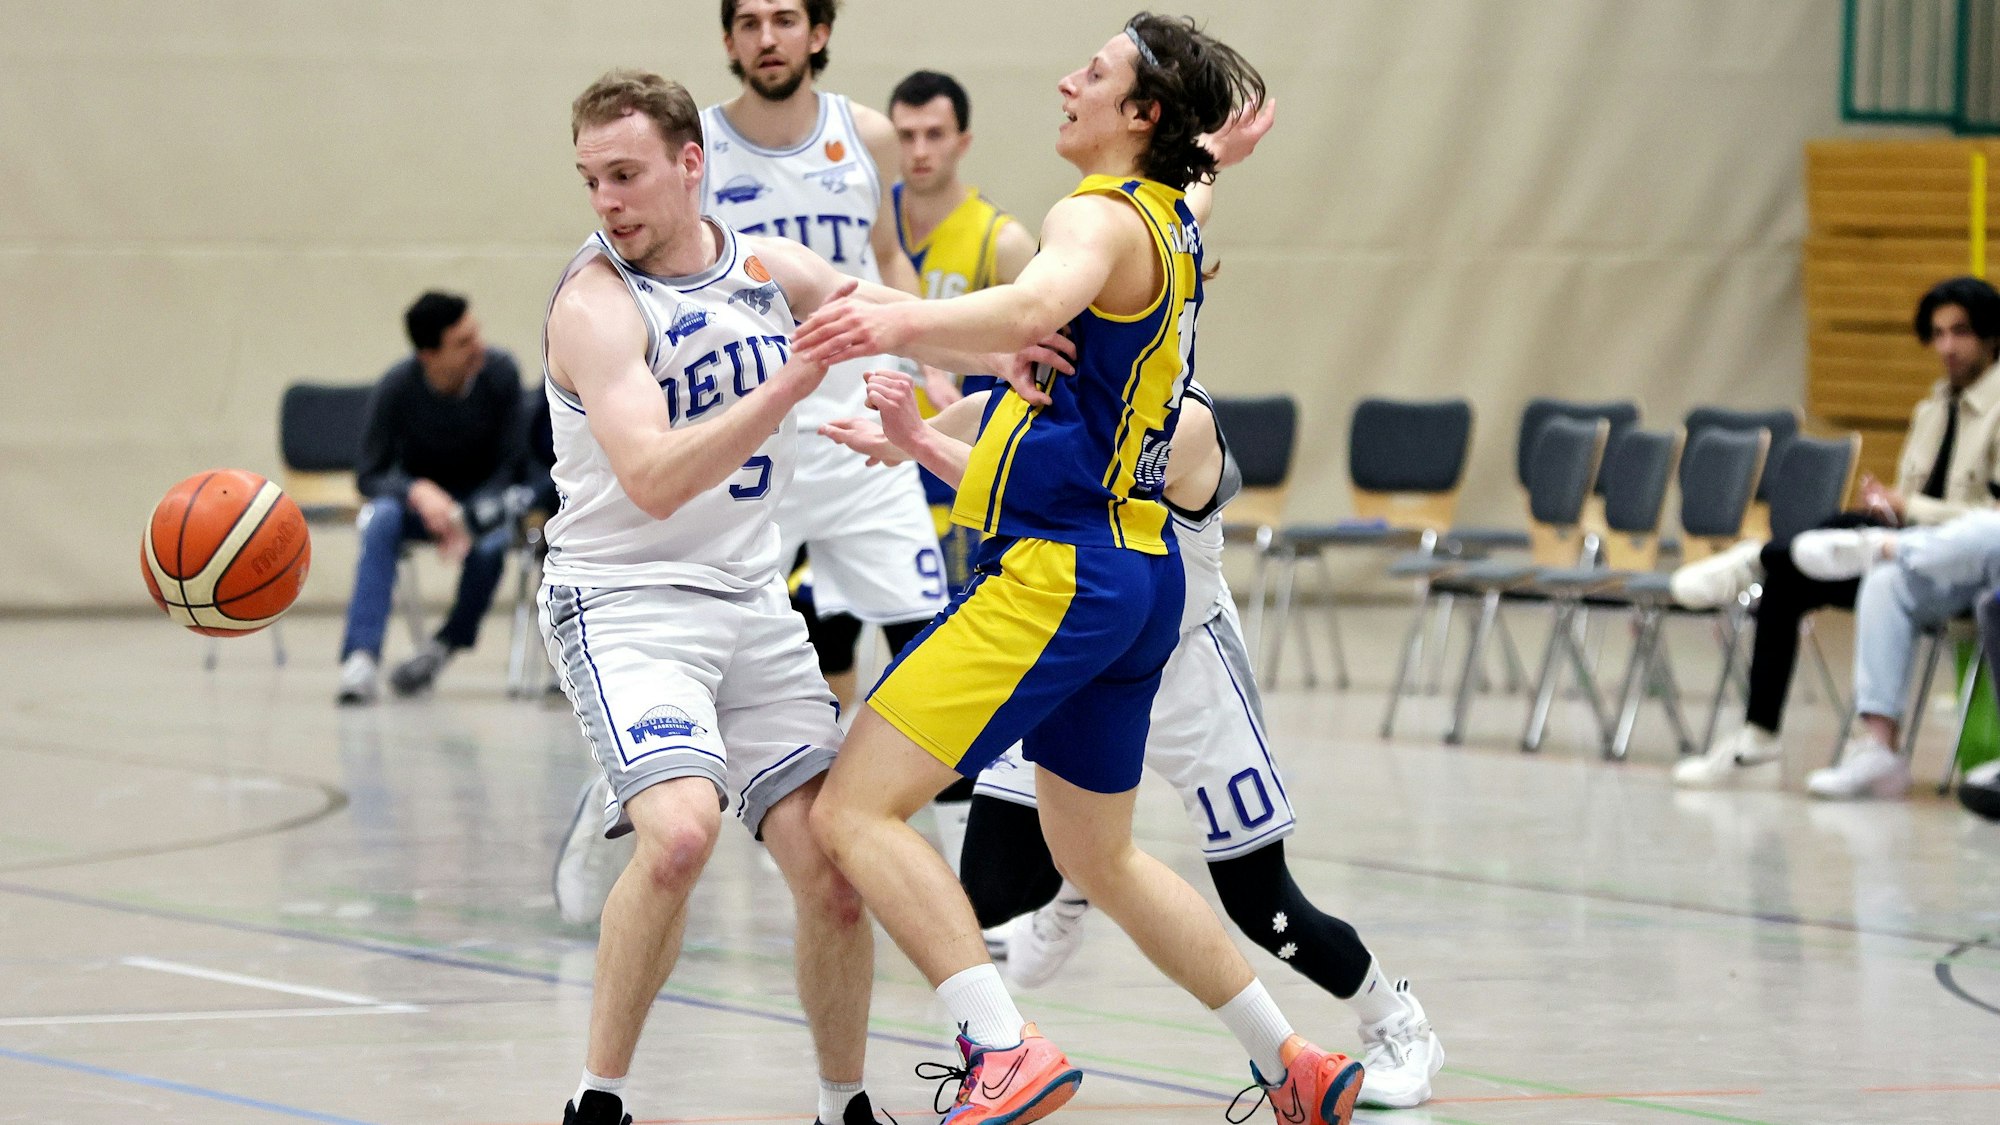 Ein Basketballspieler wird von seinem Gegner gestoppt.